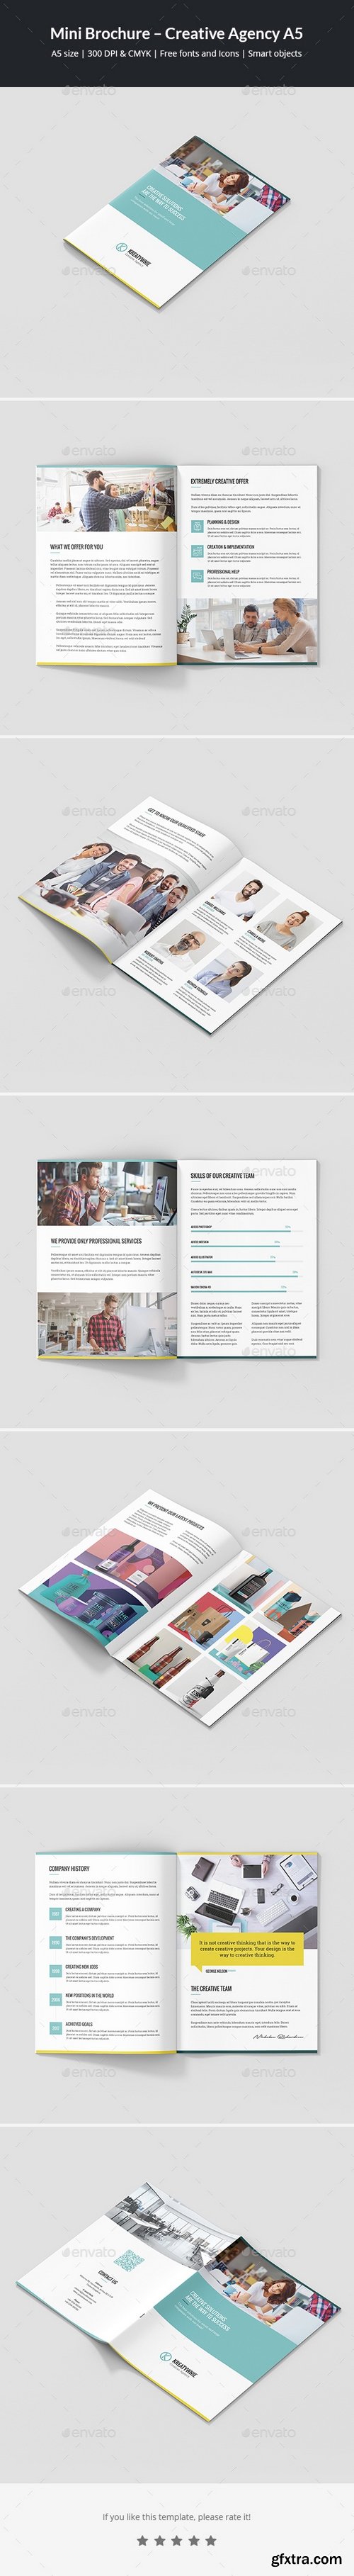 Graphicriver - Mini Brochure – Creative Agency A5 21233352